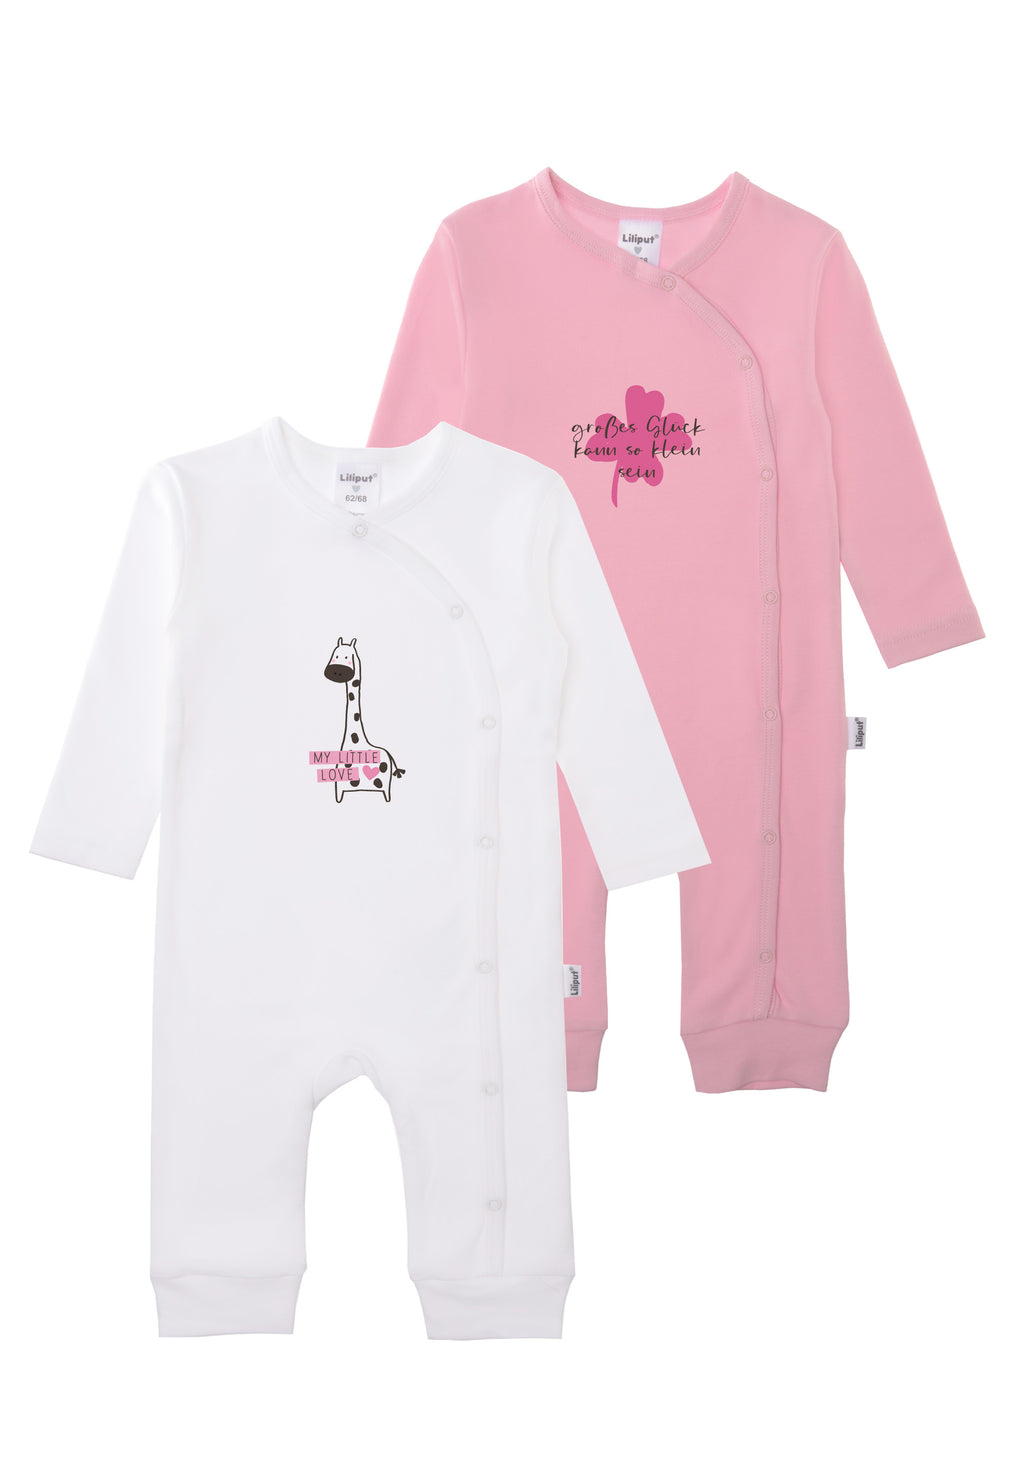 Doppelpack Overalls in weiß und rosa mit Giraffen Print und Wording "Glück kann so klein sein".